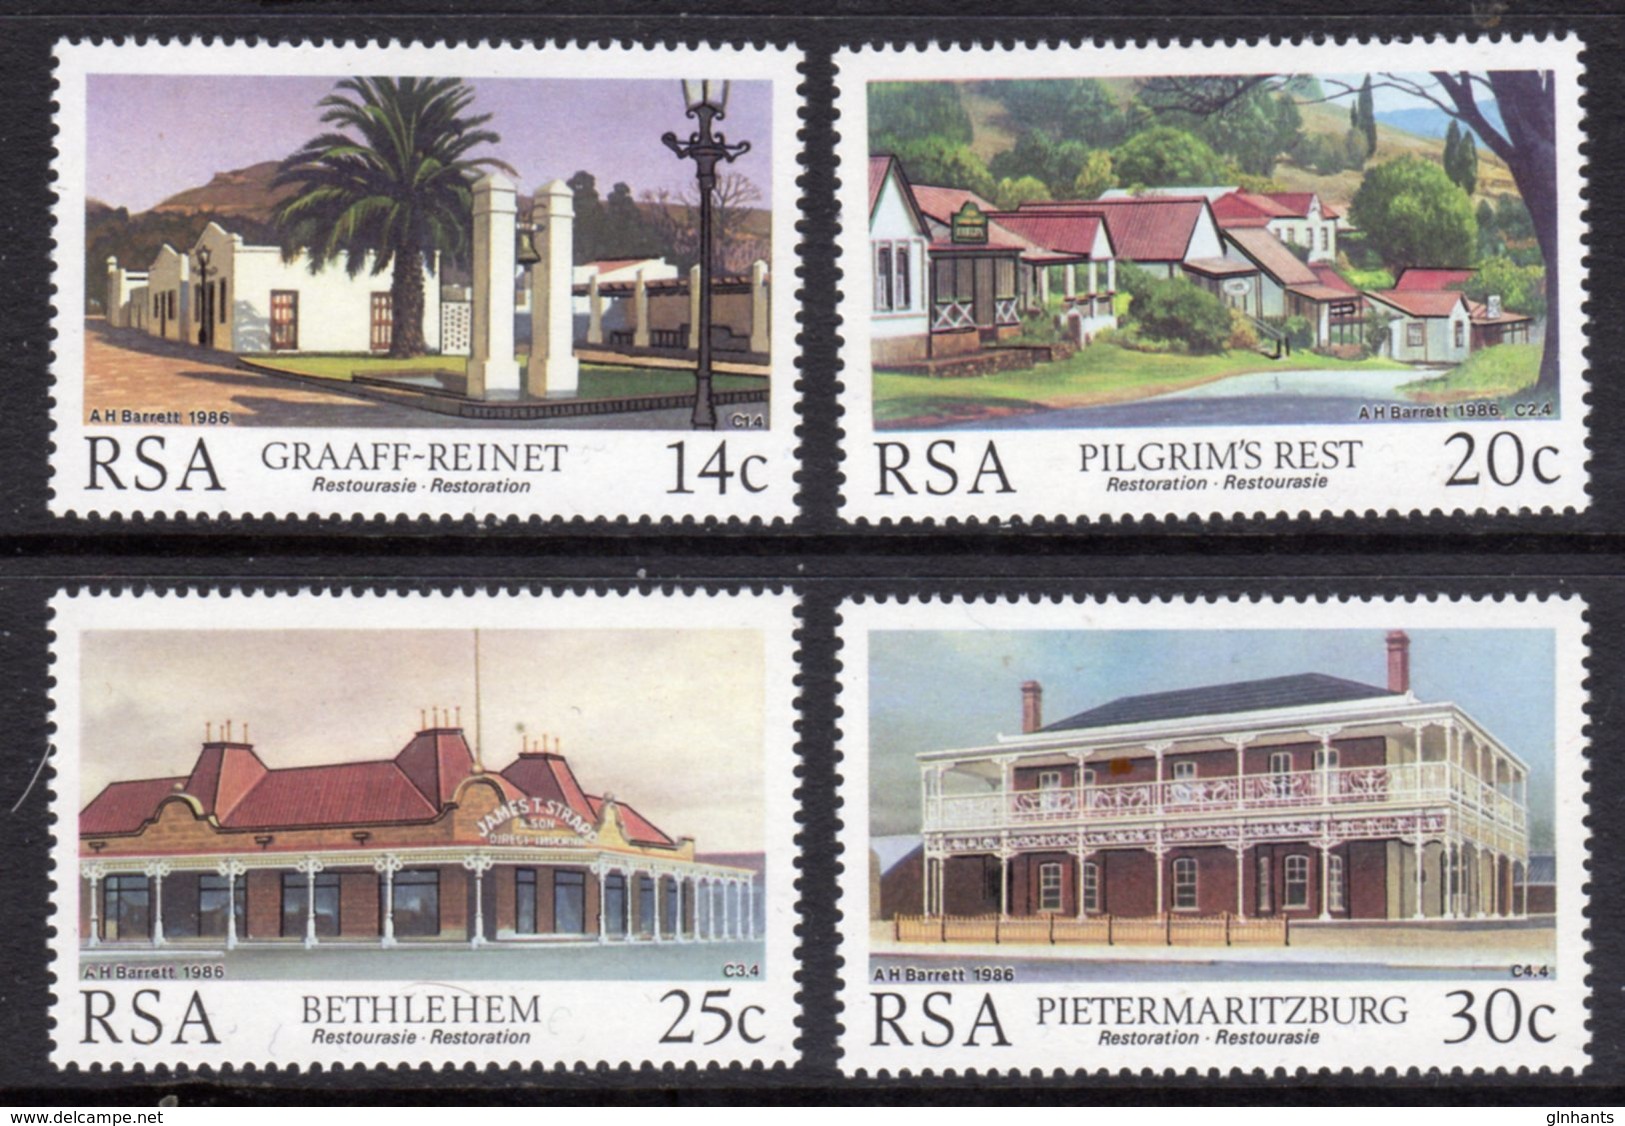 SOUTH AFRICA - 1986 HISTORIC BUILDINGS RESTORATION SET (4V) FINE MOUNTED MINT MM * SG 600-603 - Unused Stamps